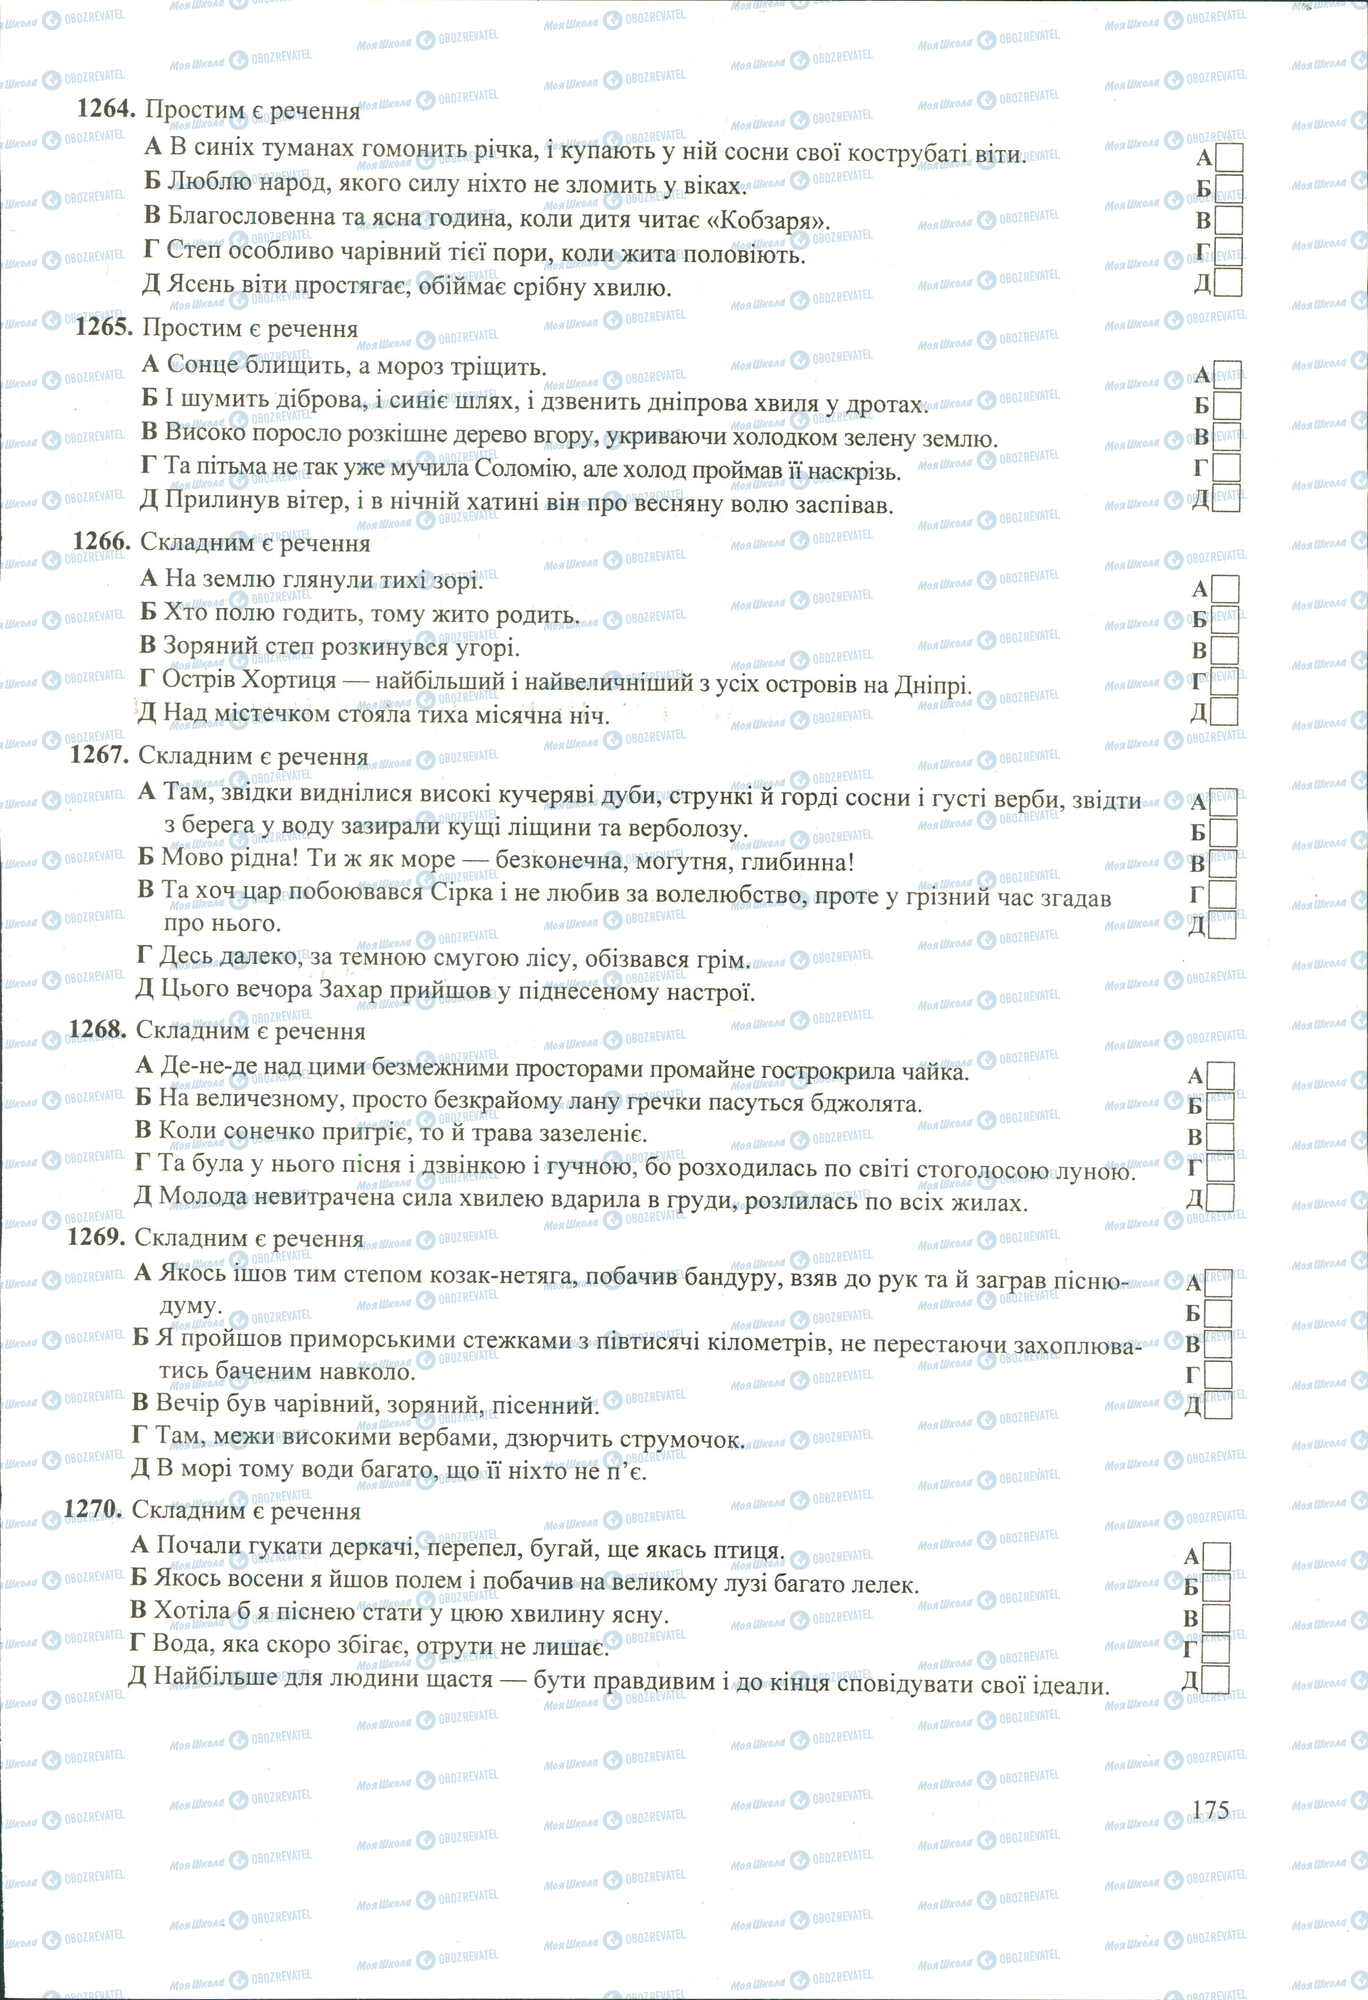 ЗНО Укр мова 11 класс страница 1264-1270